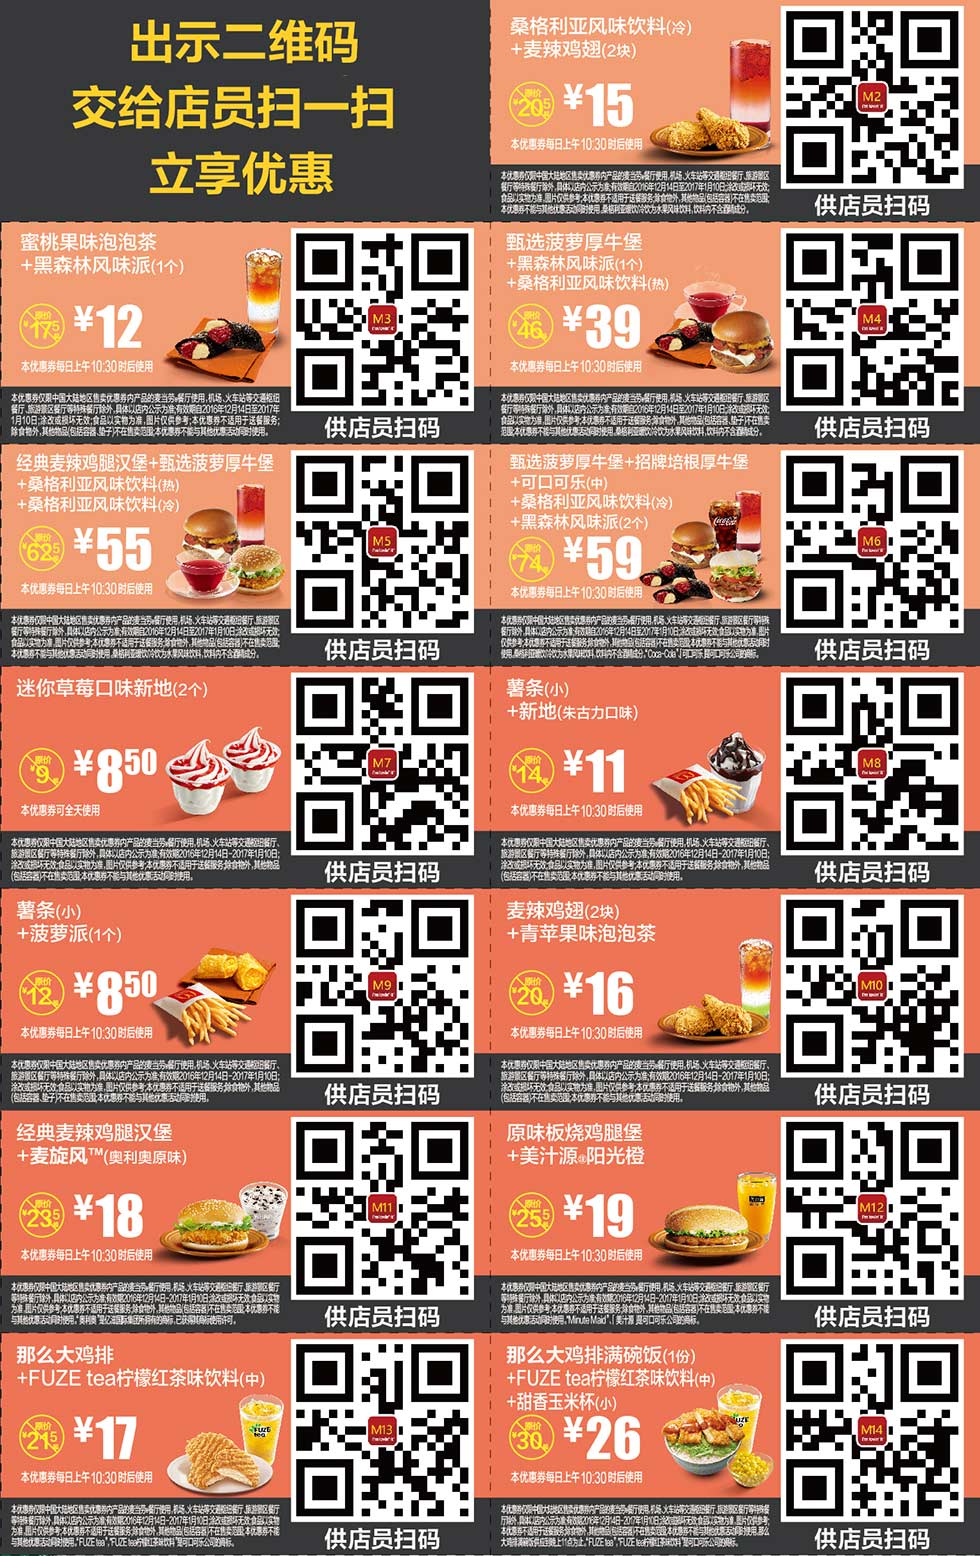 麦当劳优惠券手机版2016年12月2017年1月份整张版本，手机出示享优惠